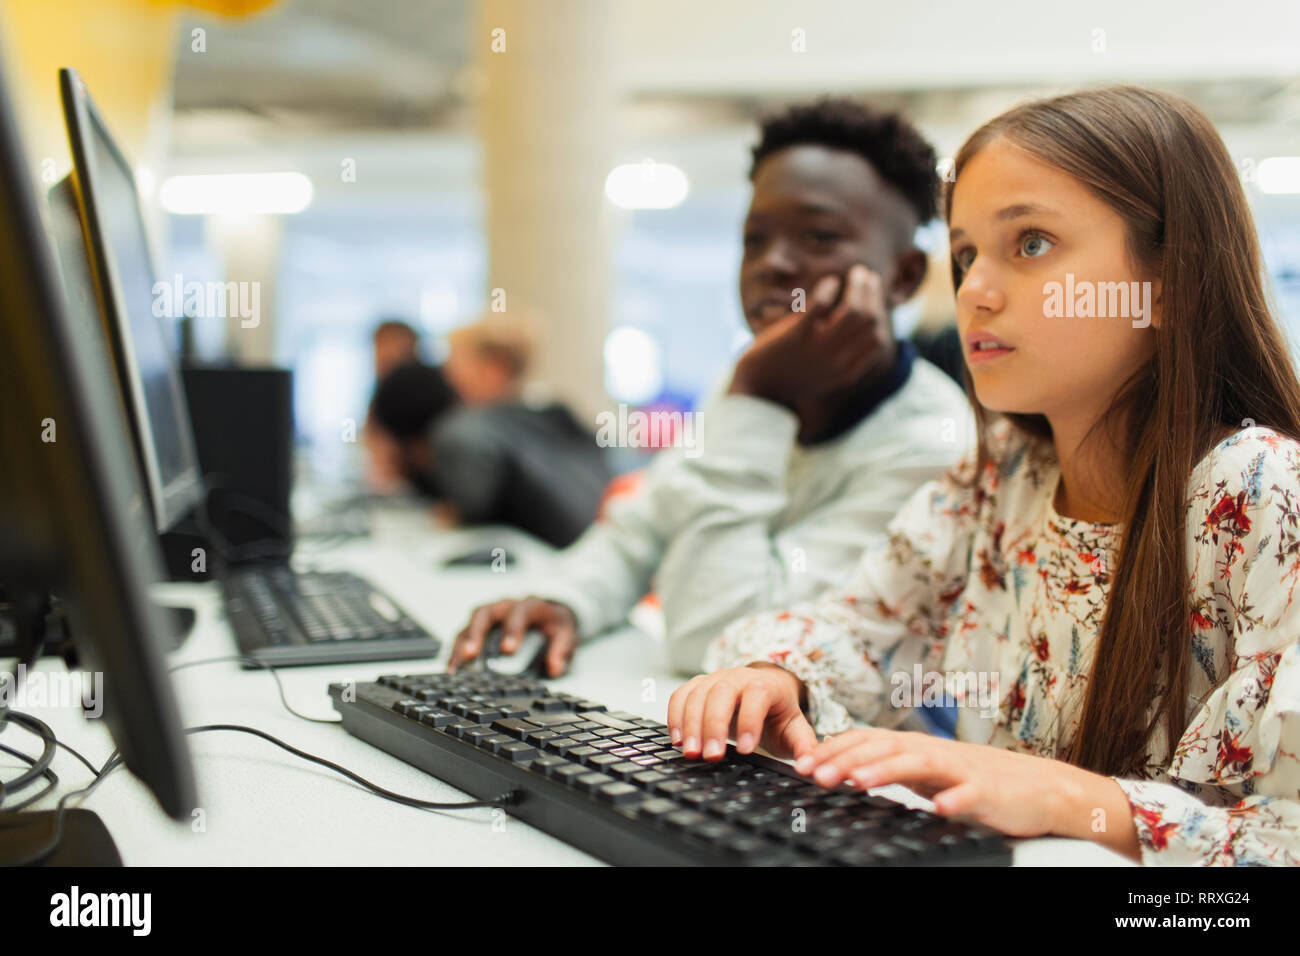 Les étudiants de premier cycle à l'aide d'un ordinateur in computer lab Banque D'Images